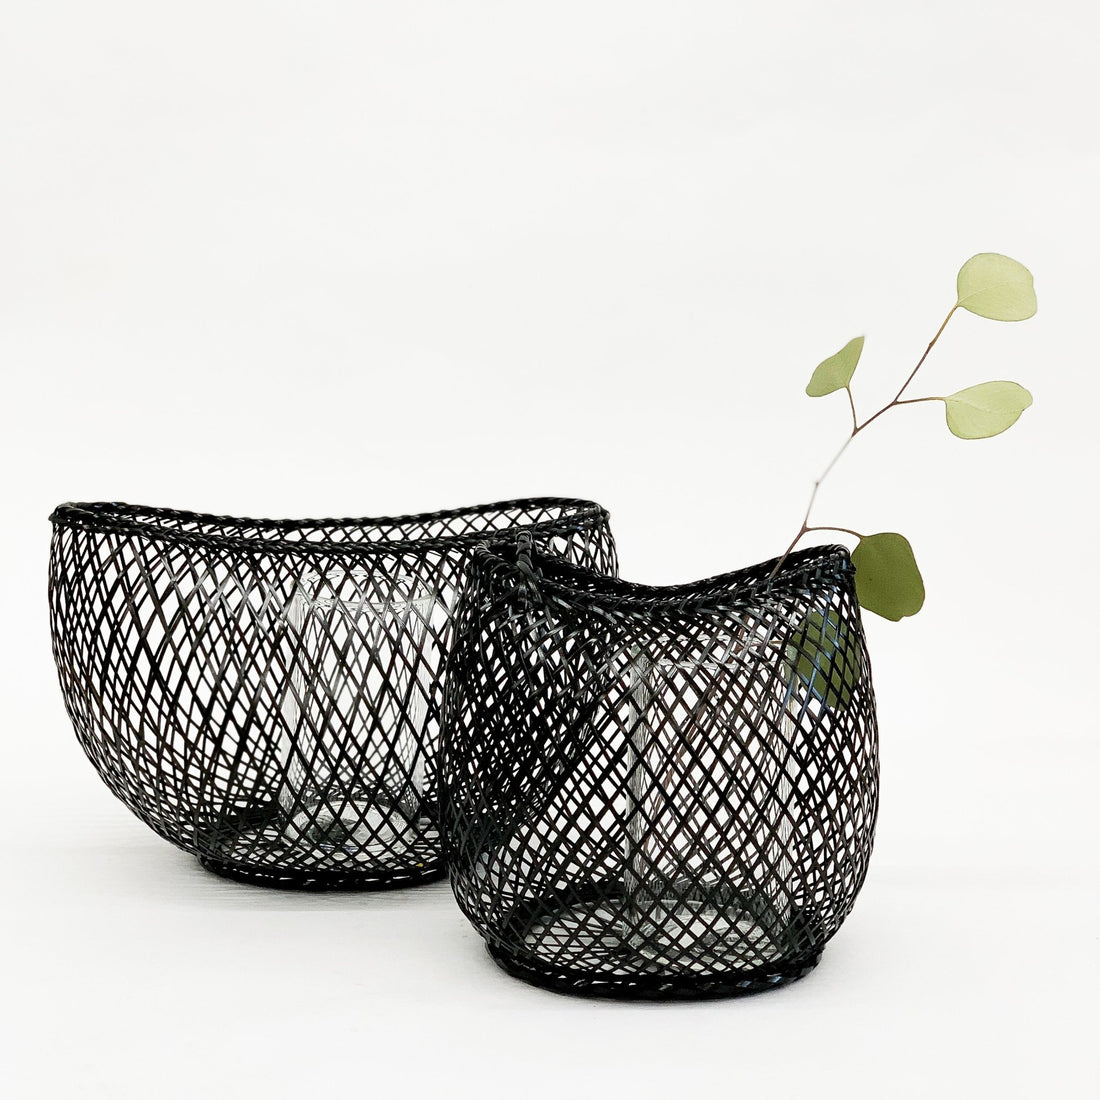 Kosuga Flower Basket Black - tortoise general store, hand woven bamboo flower basket